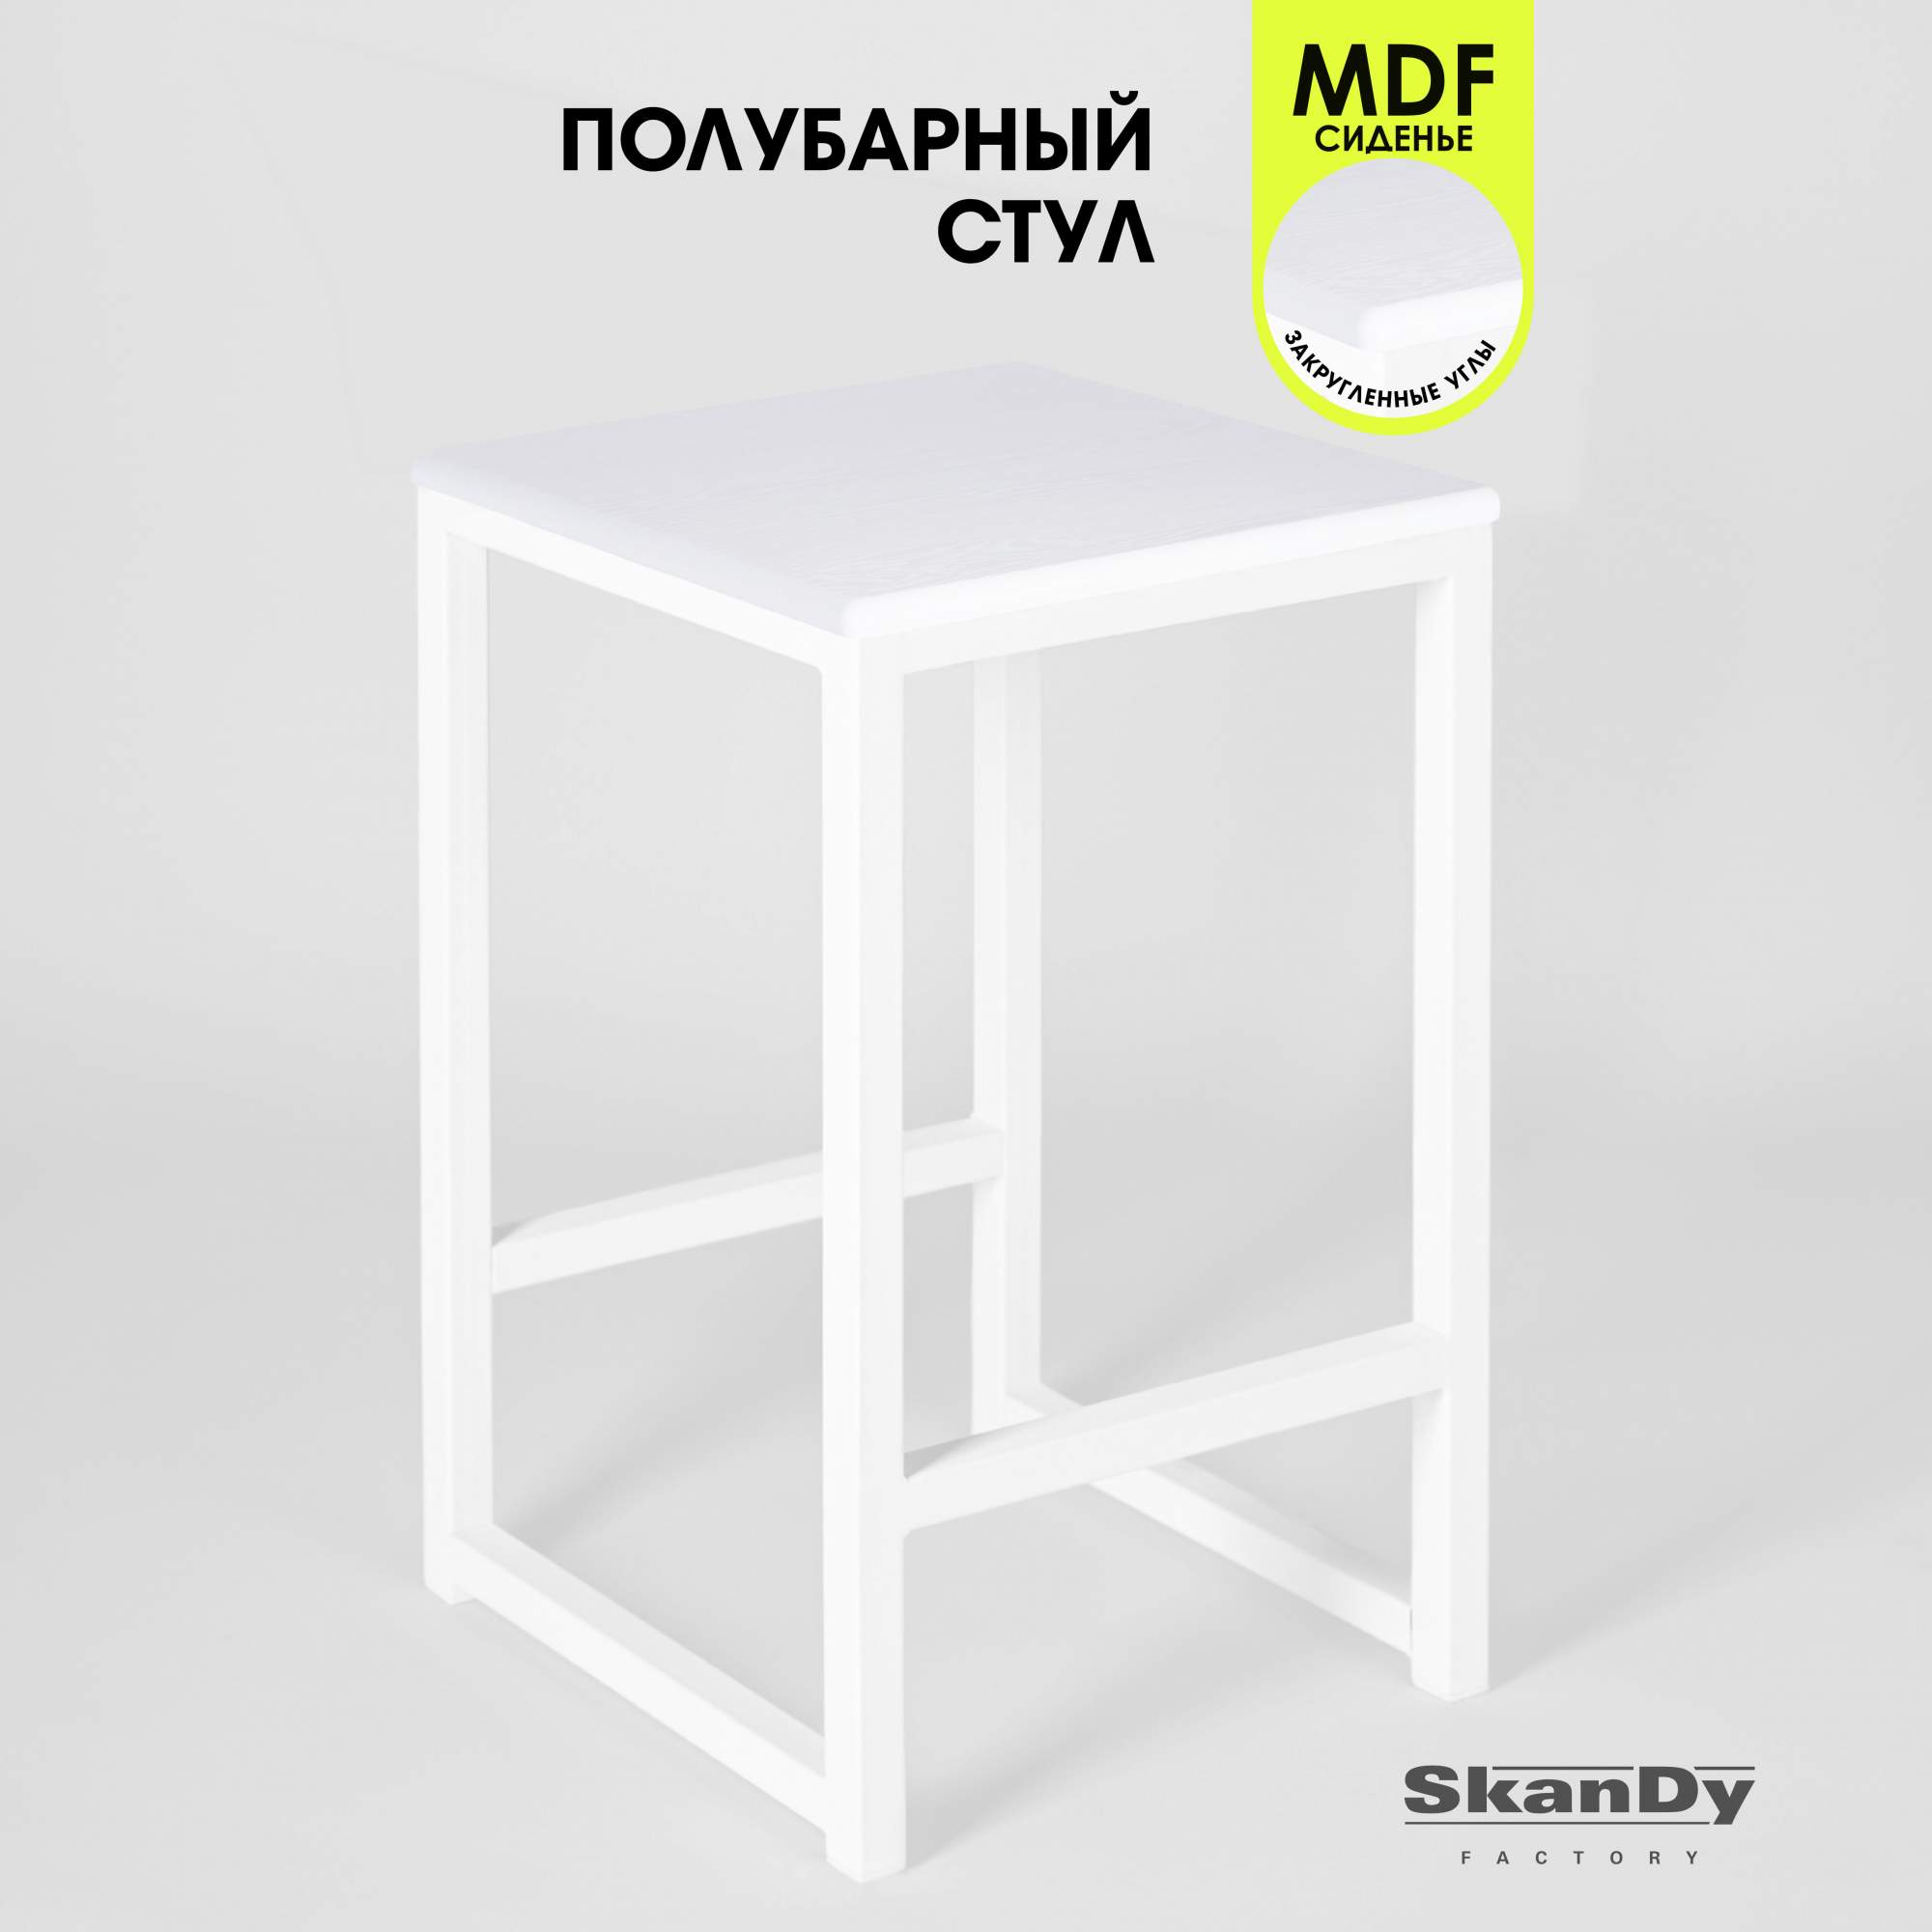 Полубарный стул для кухни SkanDy Factory, 60 см, ясень белый